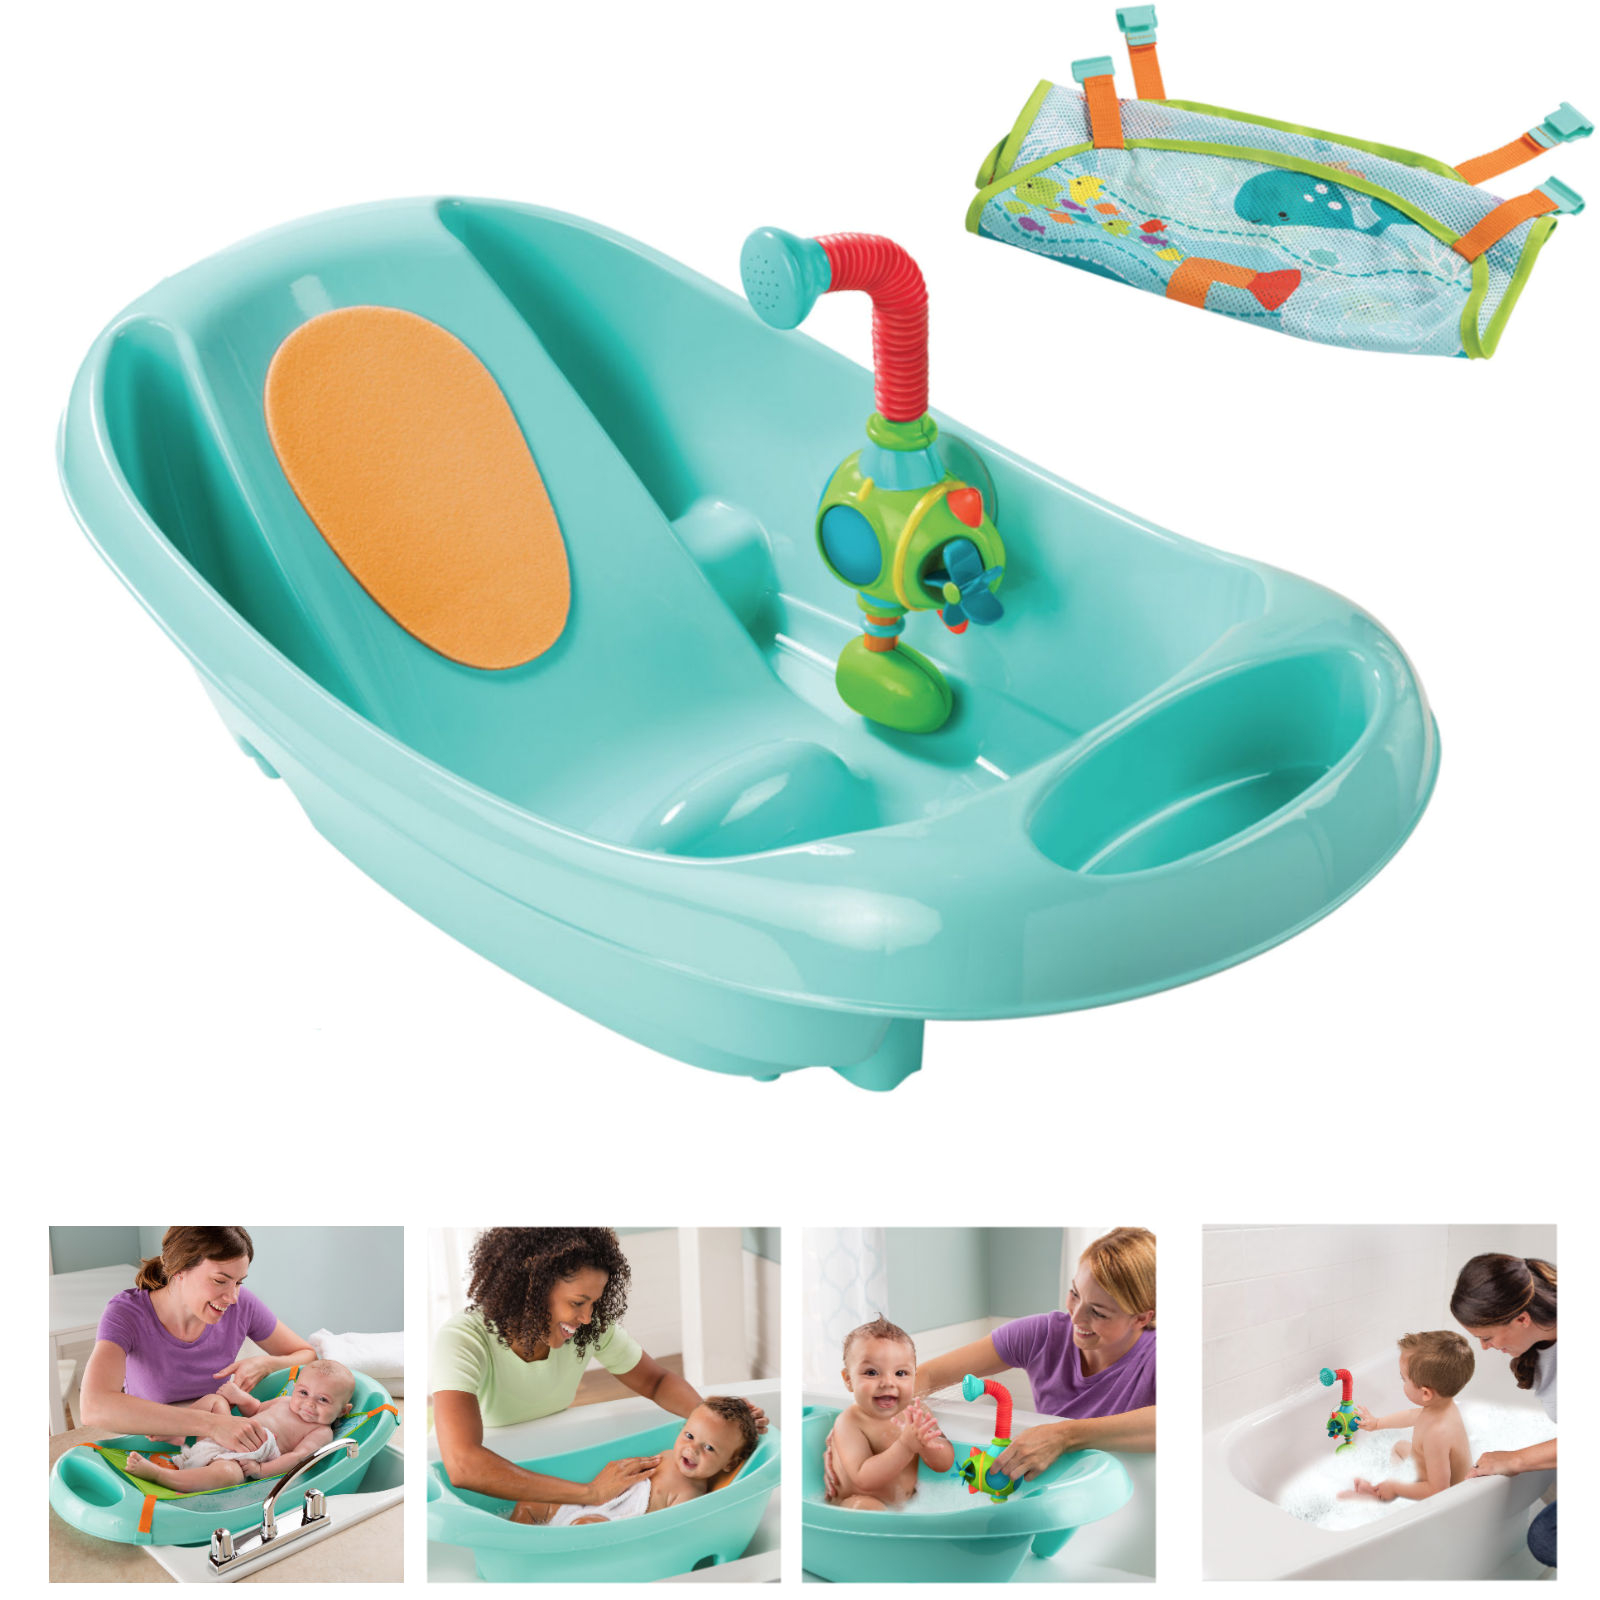 Baby Bath Tub 4 In 1 Summer Infant My Fun Tub Baby Bath Seat with Sprayer